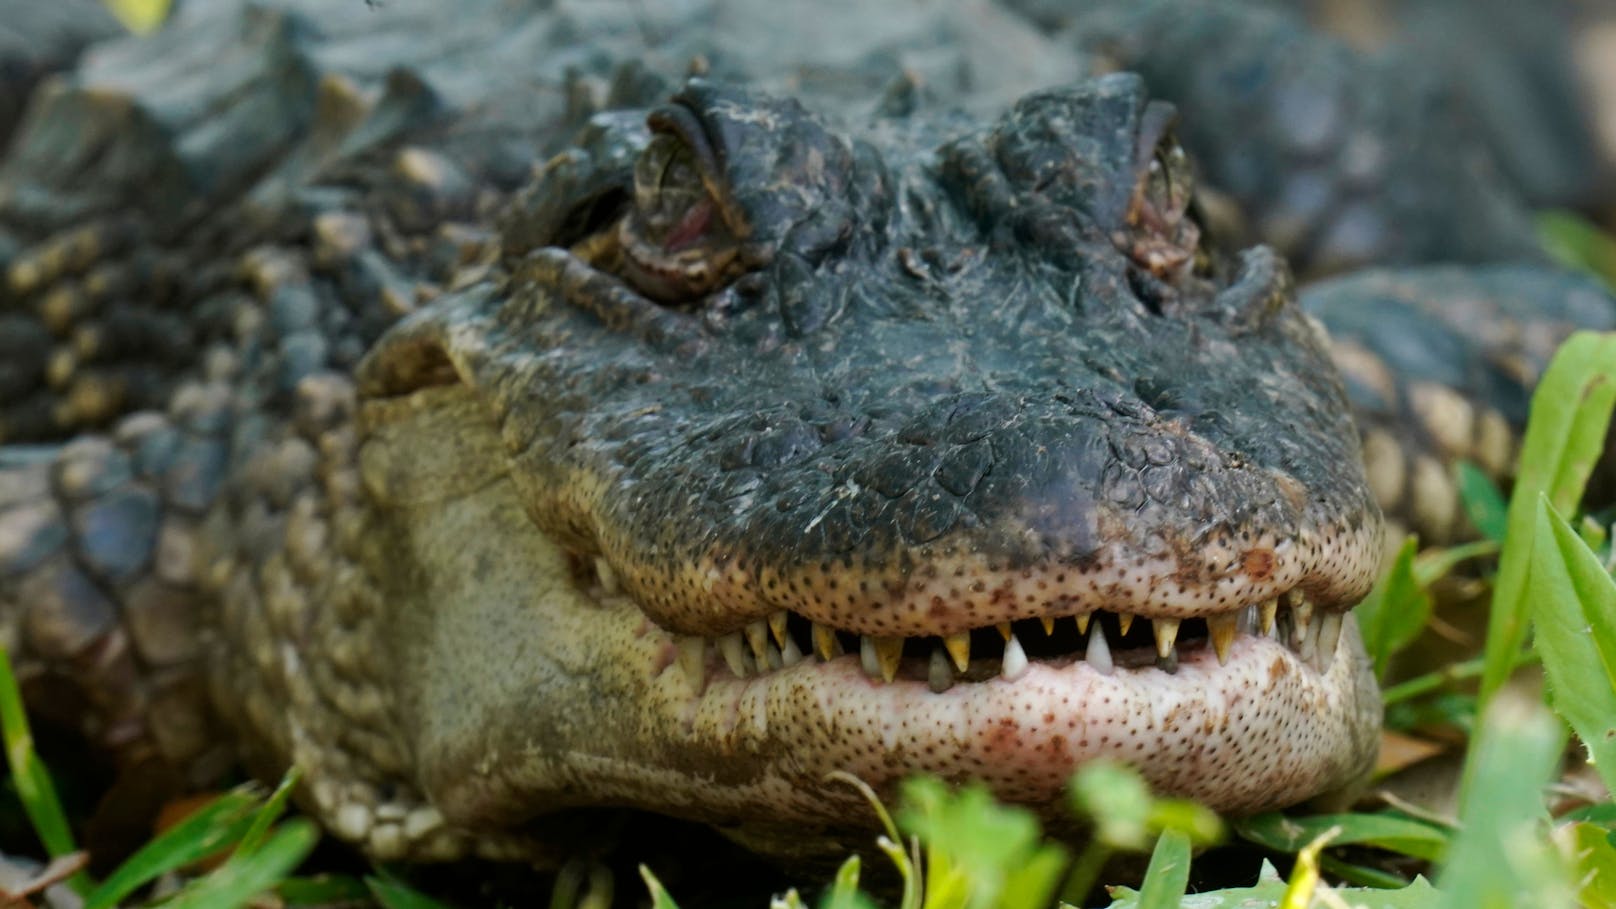 Das Alligator-Weibchen wurde unter nicht artgerechten Umständen gehalten. (Symbolbild)